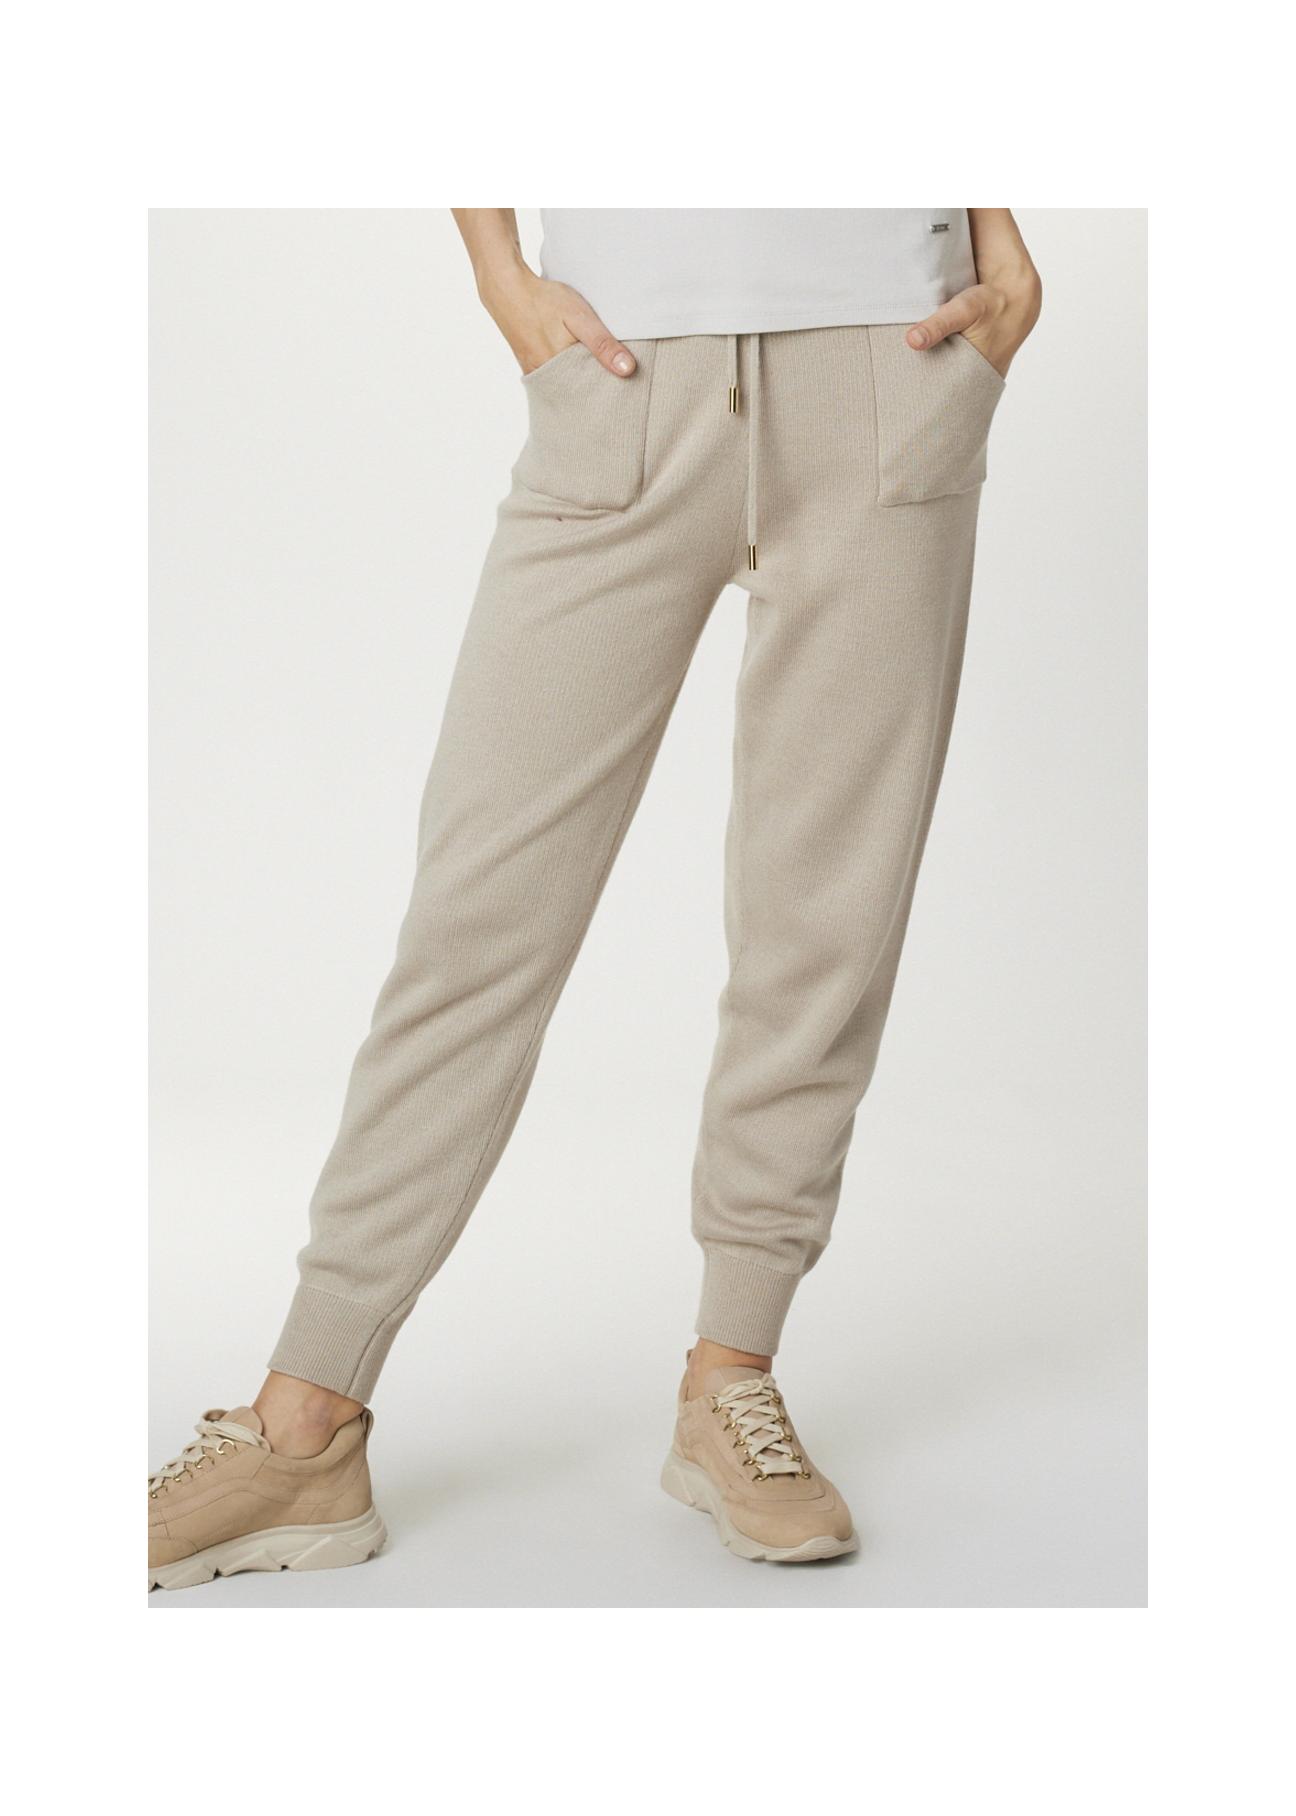 Beżowe spodnie dresowe damskie SPODT-0057-81(Z21)